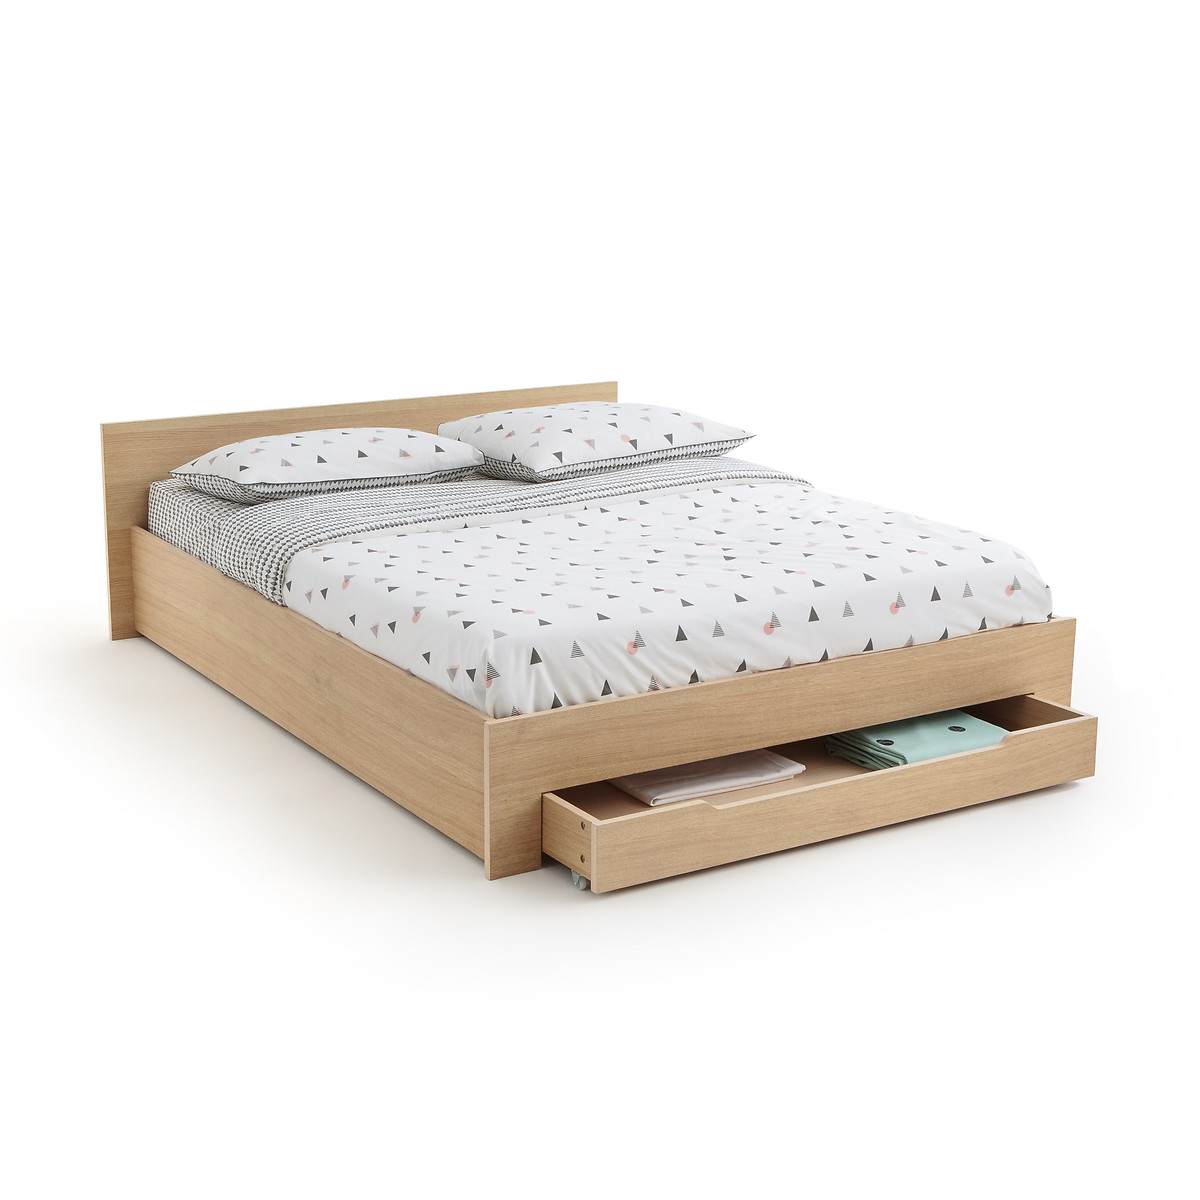 Кровать La Redoute С каркасом для матраса и выдвижным ящиком CRAWLEY 160 x 200 см каштановый, размер 160 x 200 см - фото 3